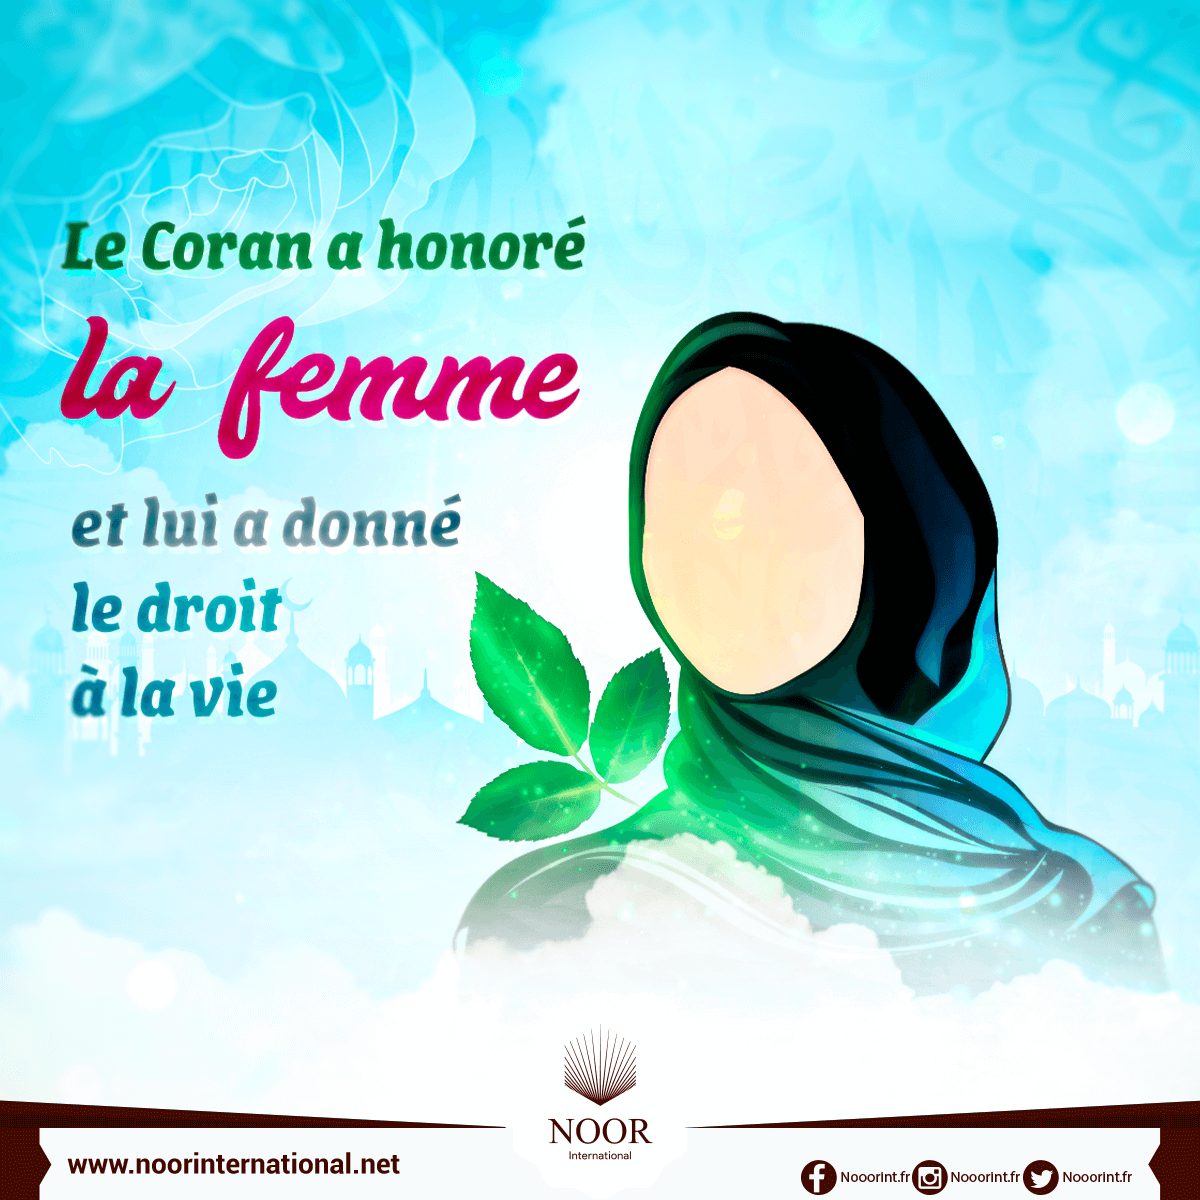 Le Coran a honoré la femme et lui a donné le droit à la vie